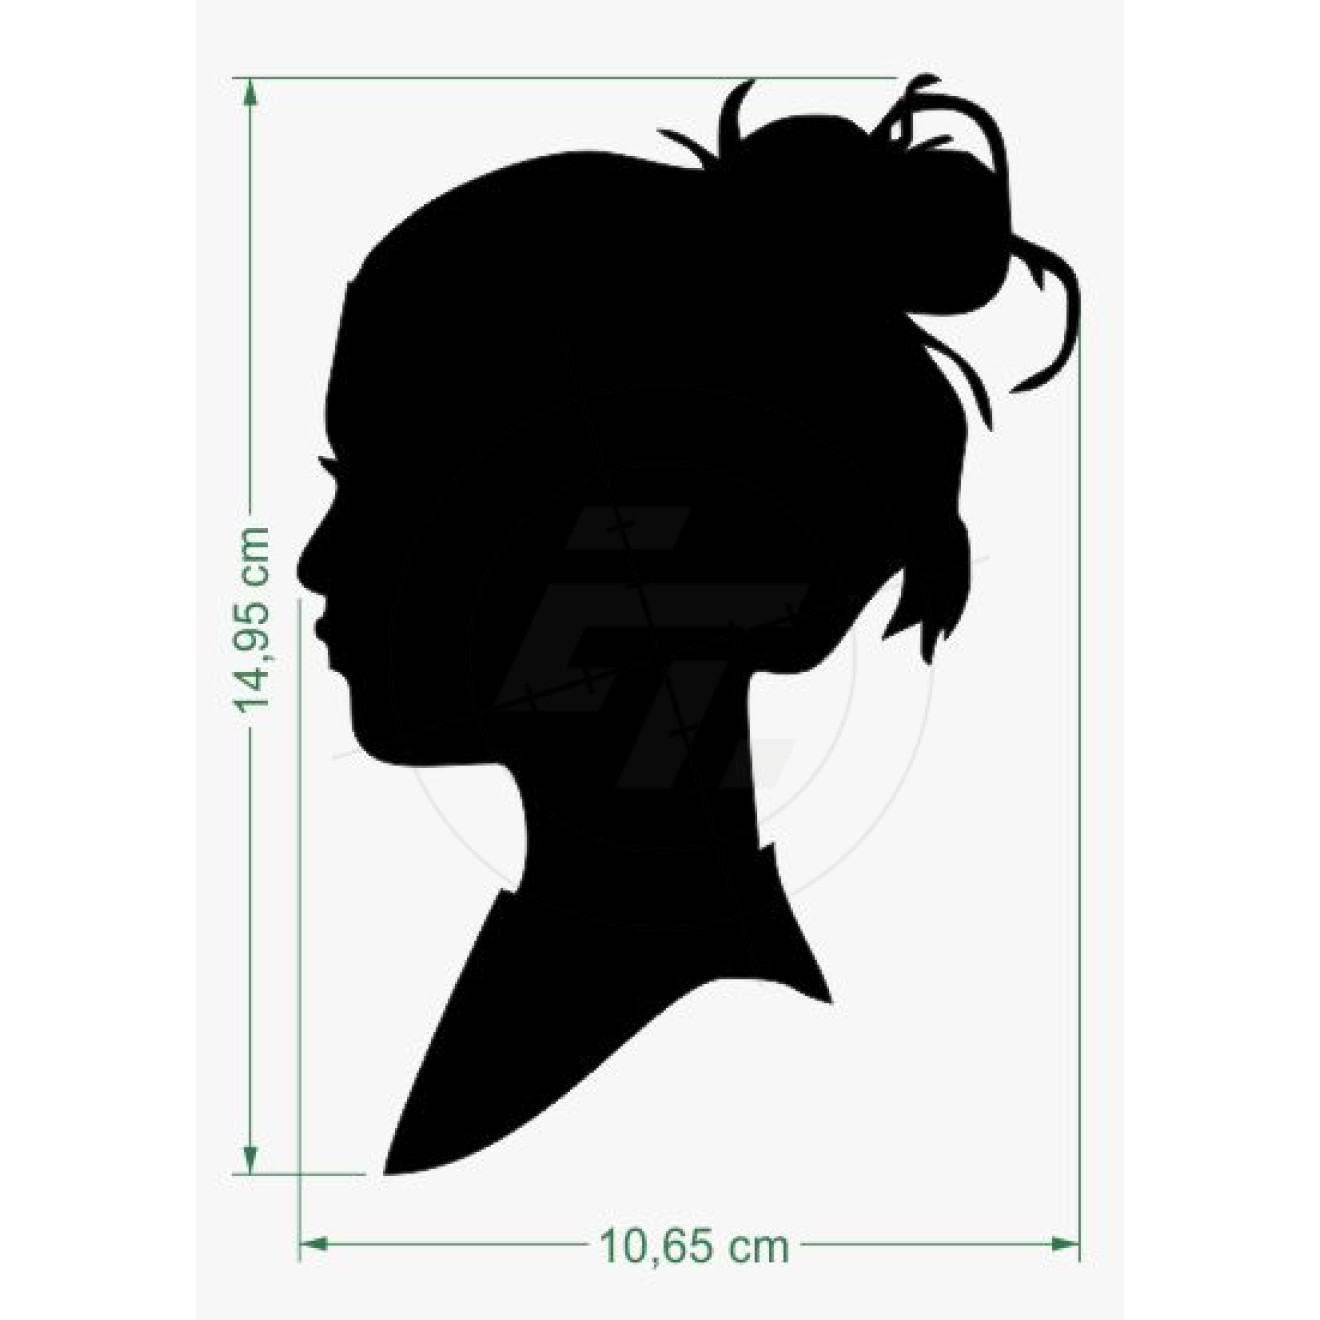 Woman head silhouette, side profile